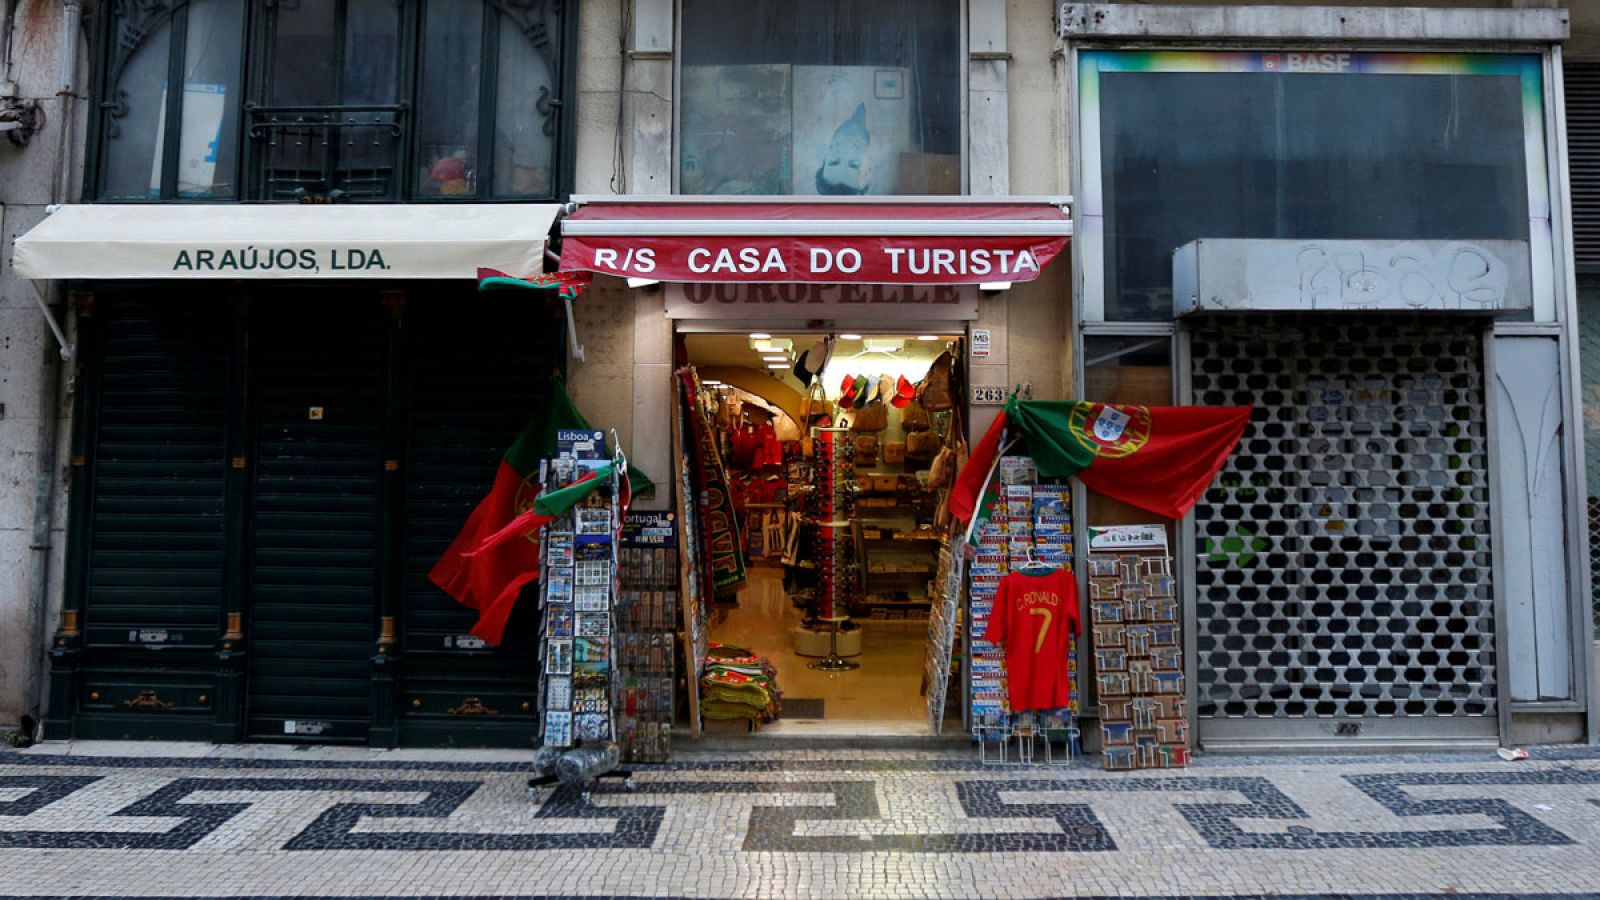 Una tienda de souvenirs en Lisboa, Portugal, en una imagen de archivo